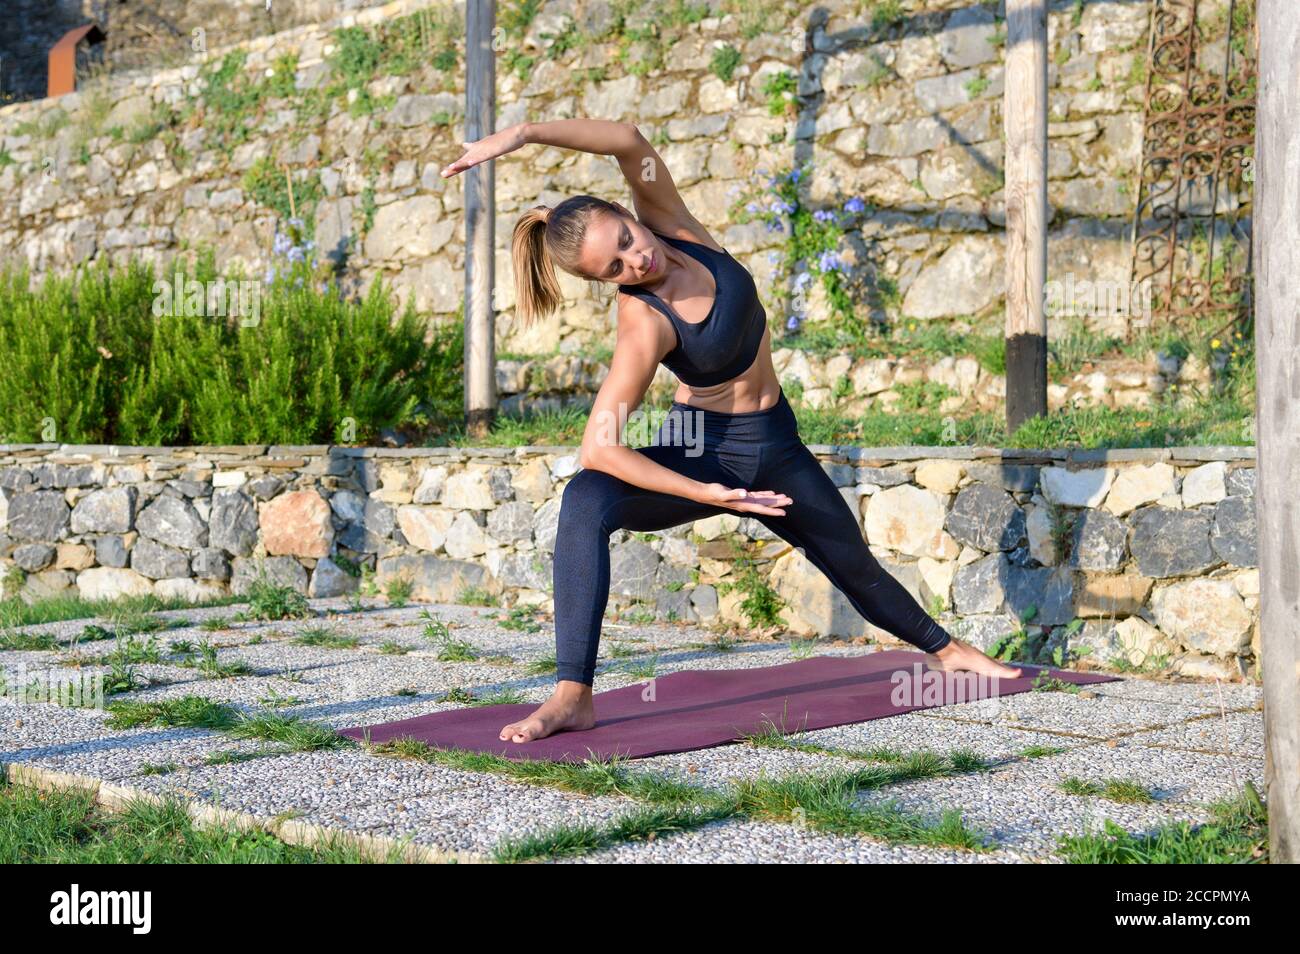 Mädchen tun einen erweiterten Seitenwinkel Yoga Pose, wie sie Arbeitet im Freien im Garten in einer Gesundheit und Fitness-Konzept Stretching und Straffung ihrer Muskeln Stockfoto